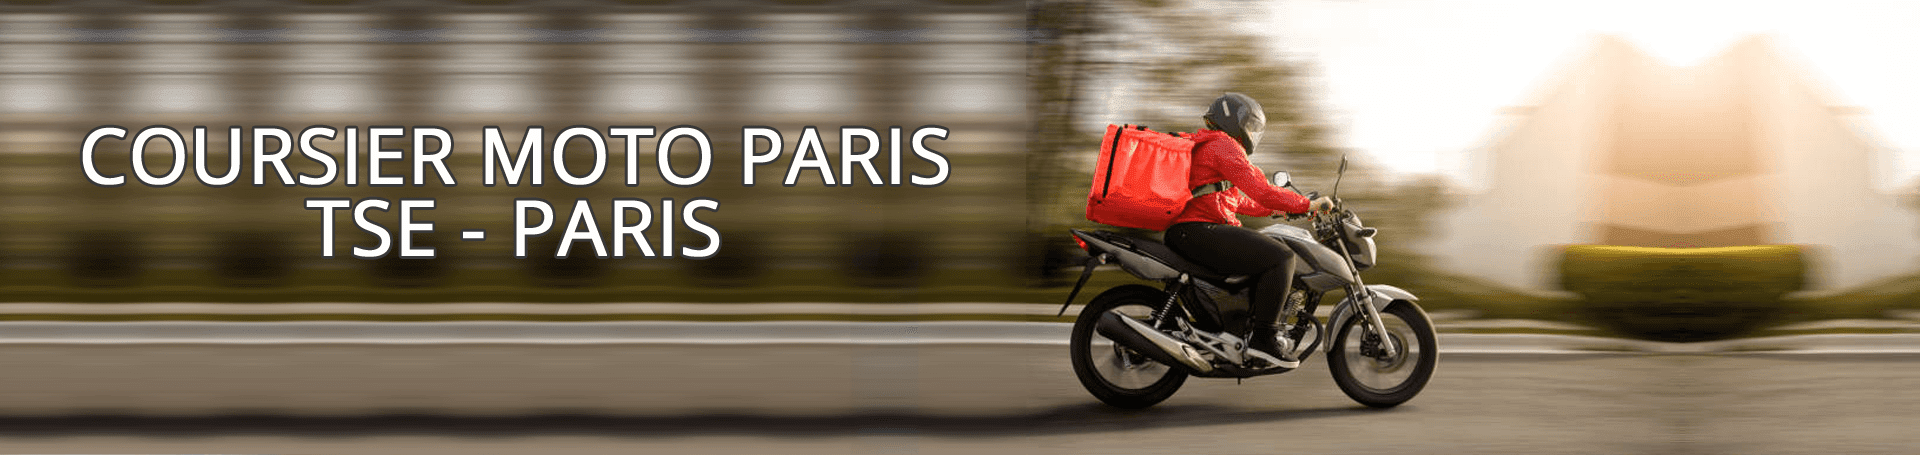 https://tse-paris.com/coursier-moto-paris.html